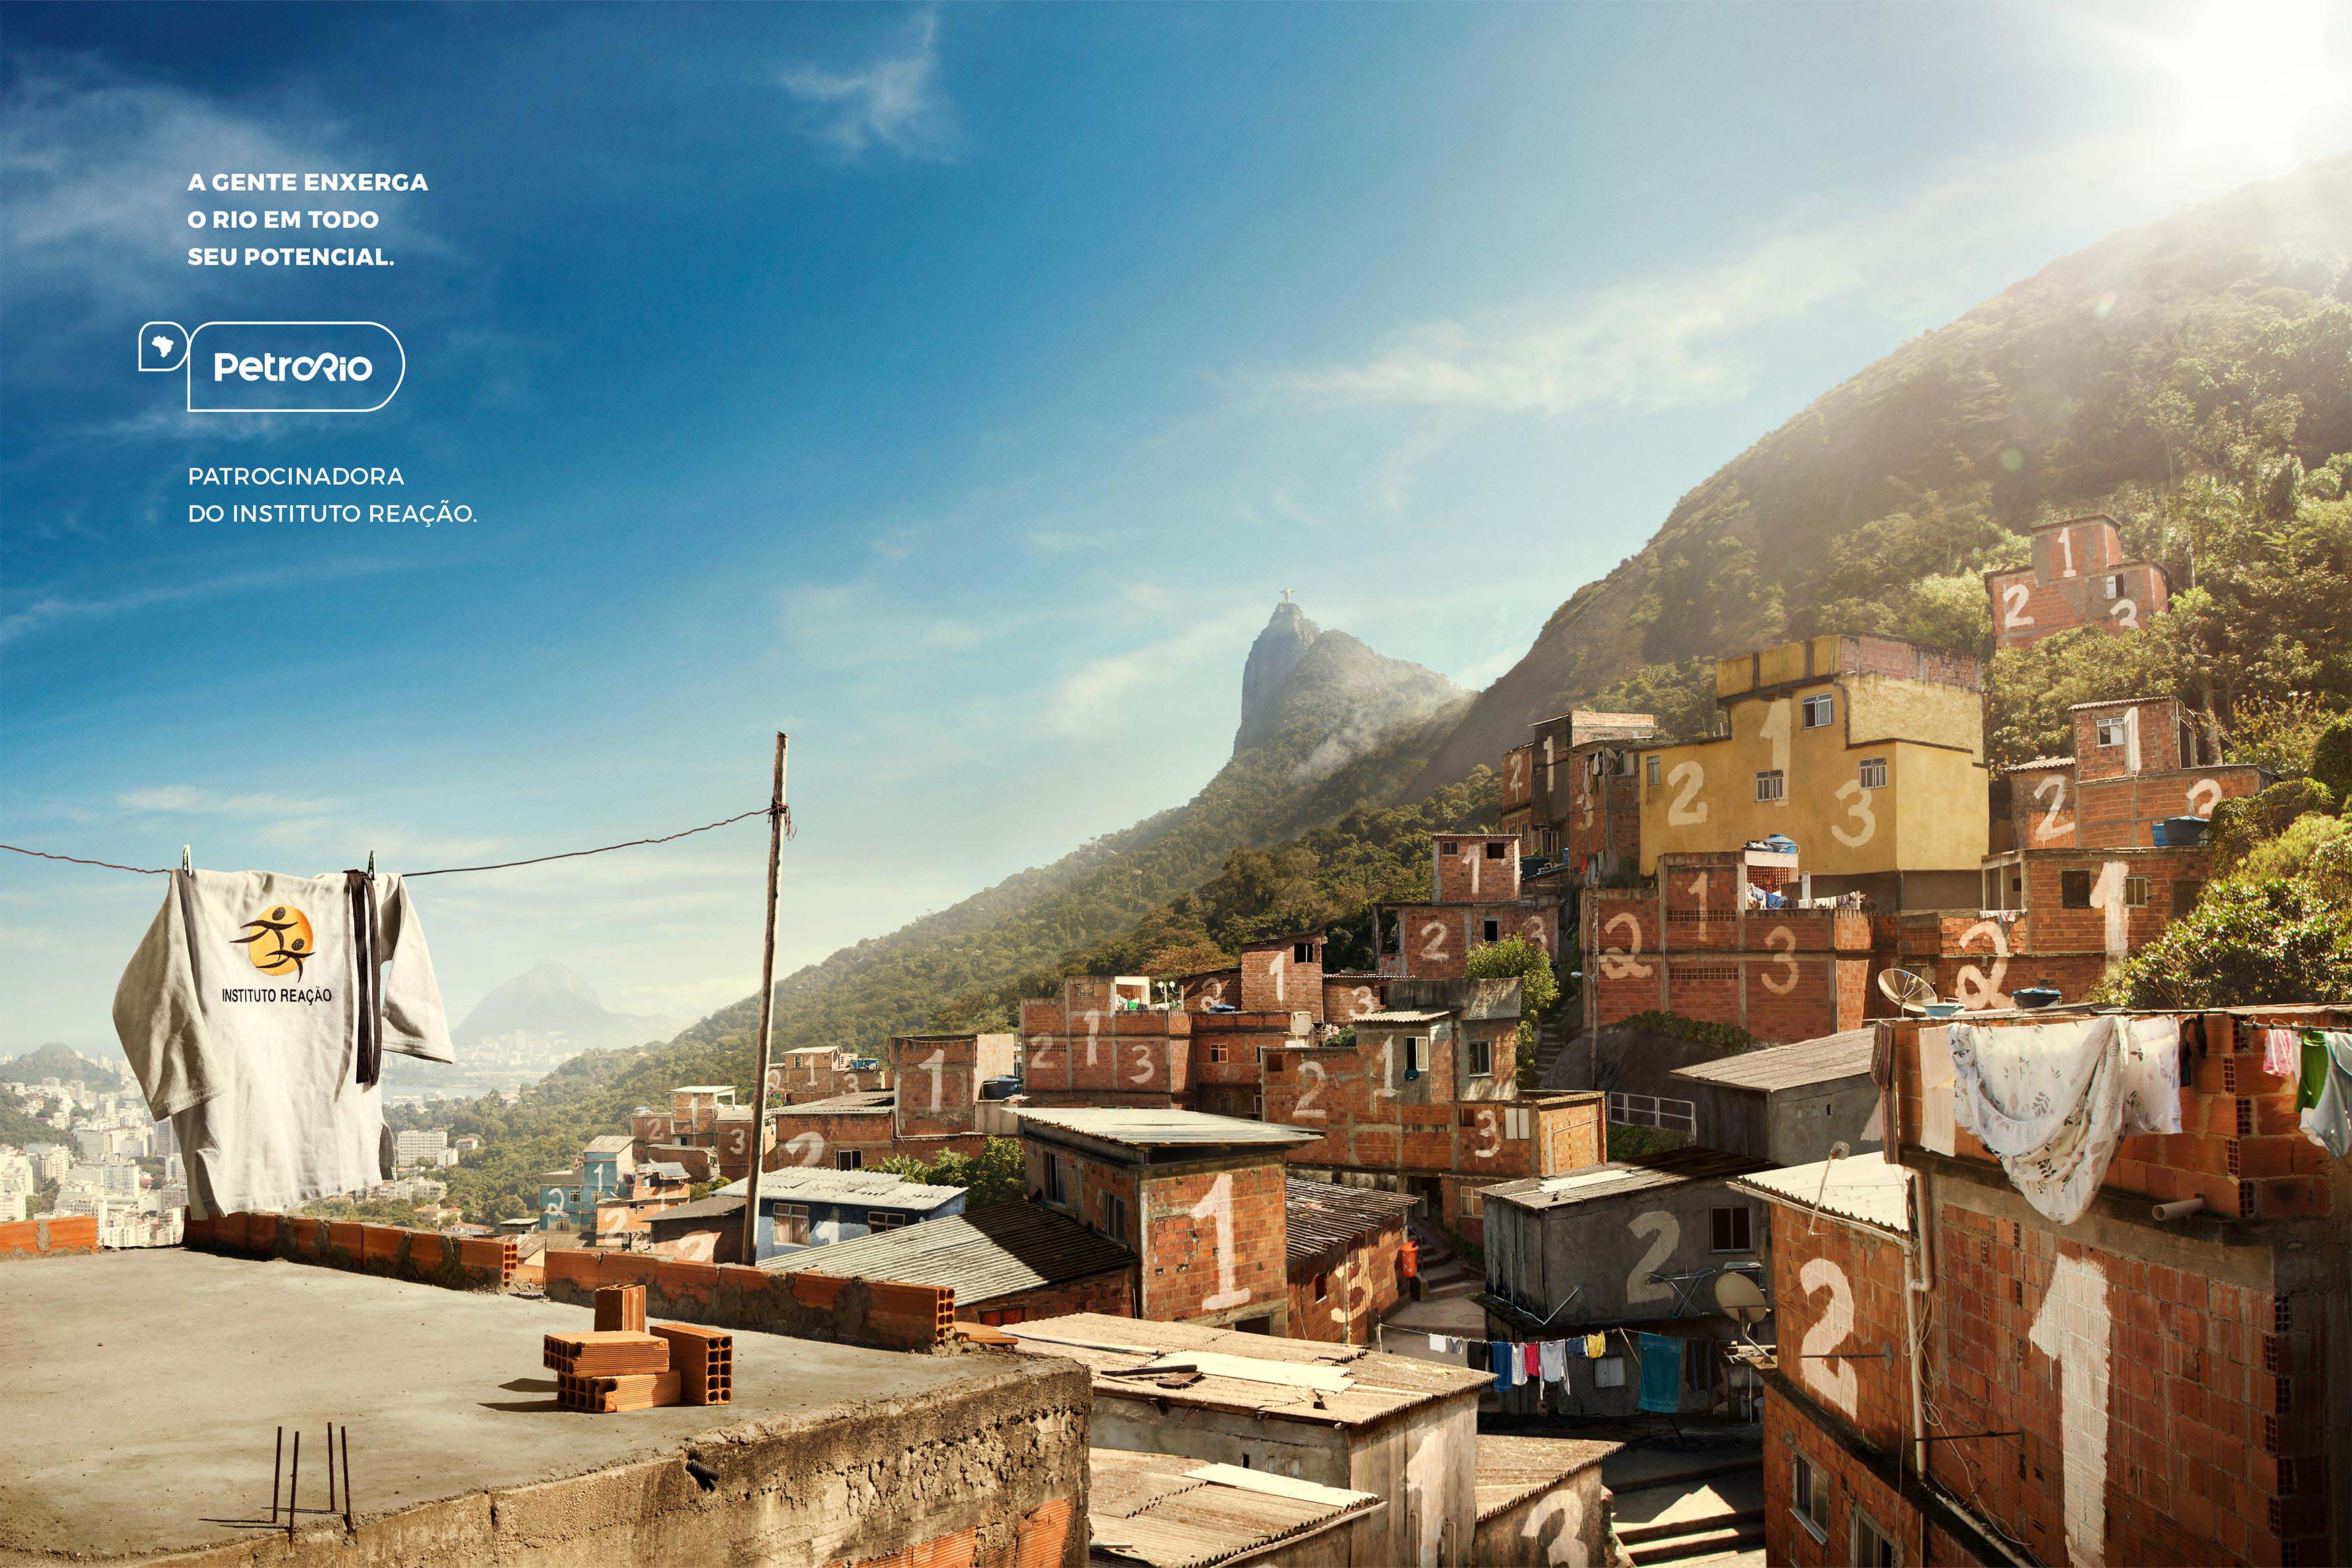 "A gente enxerga o Rio em todo seu potencial", da RASTRO para Petrorio